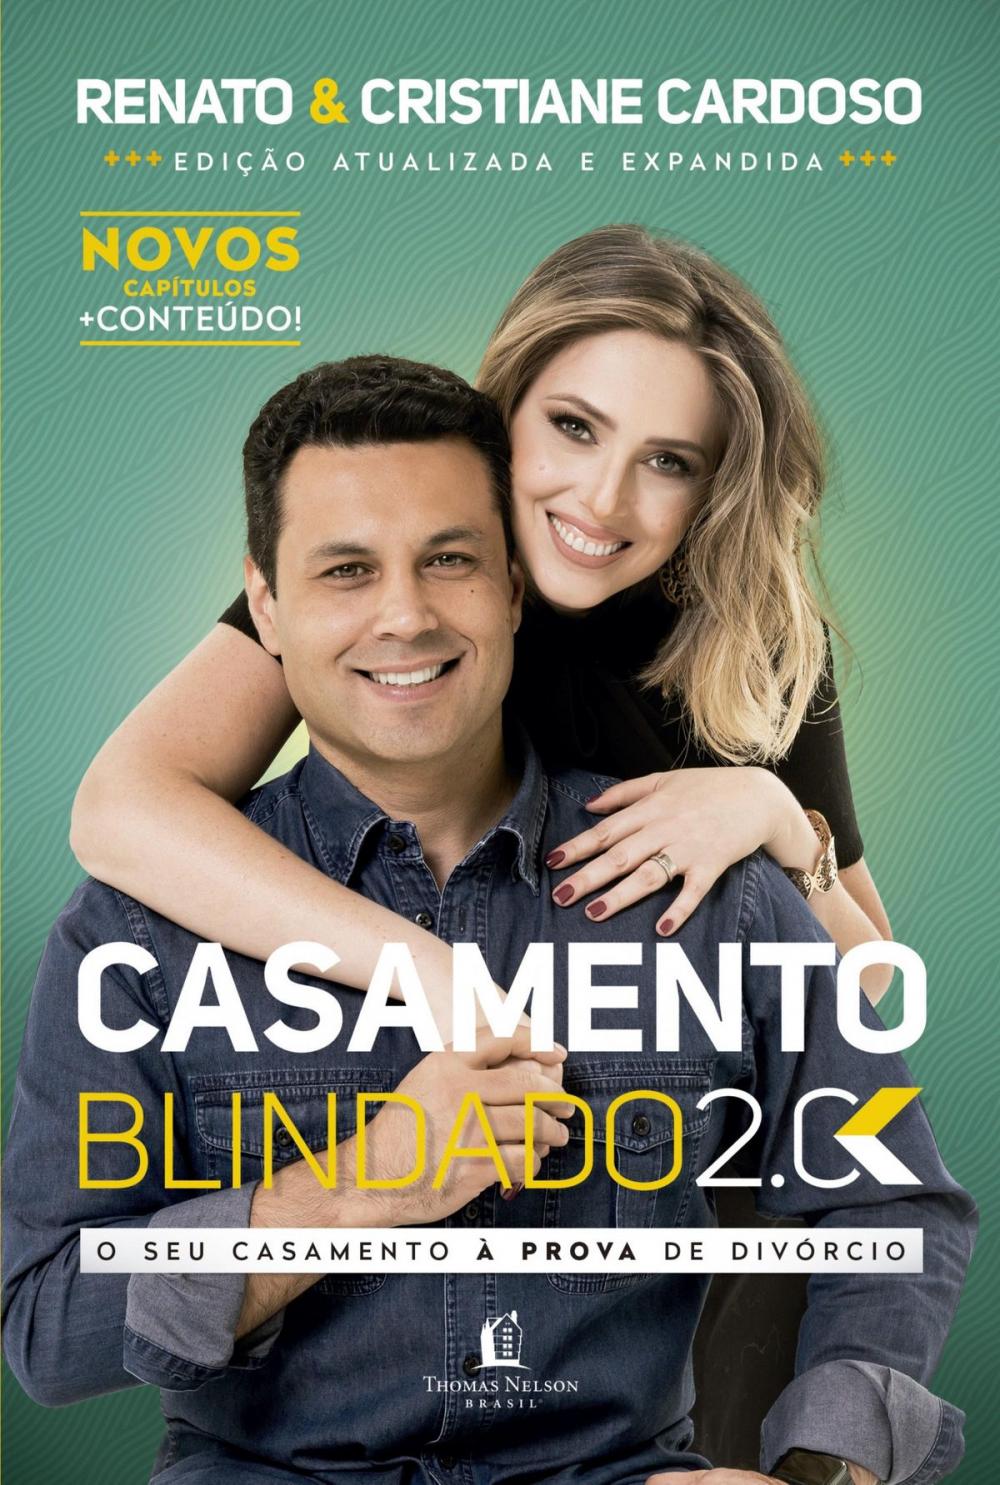 Big bigCover of Casamento blindado 2.0